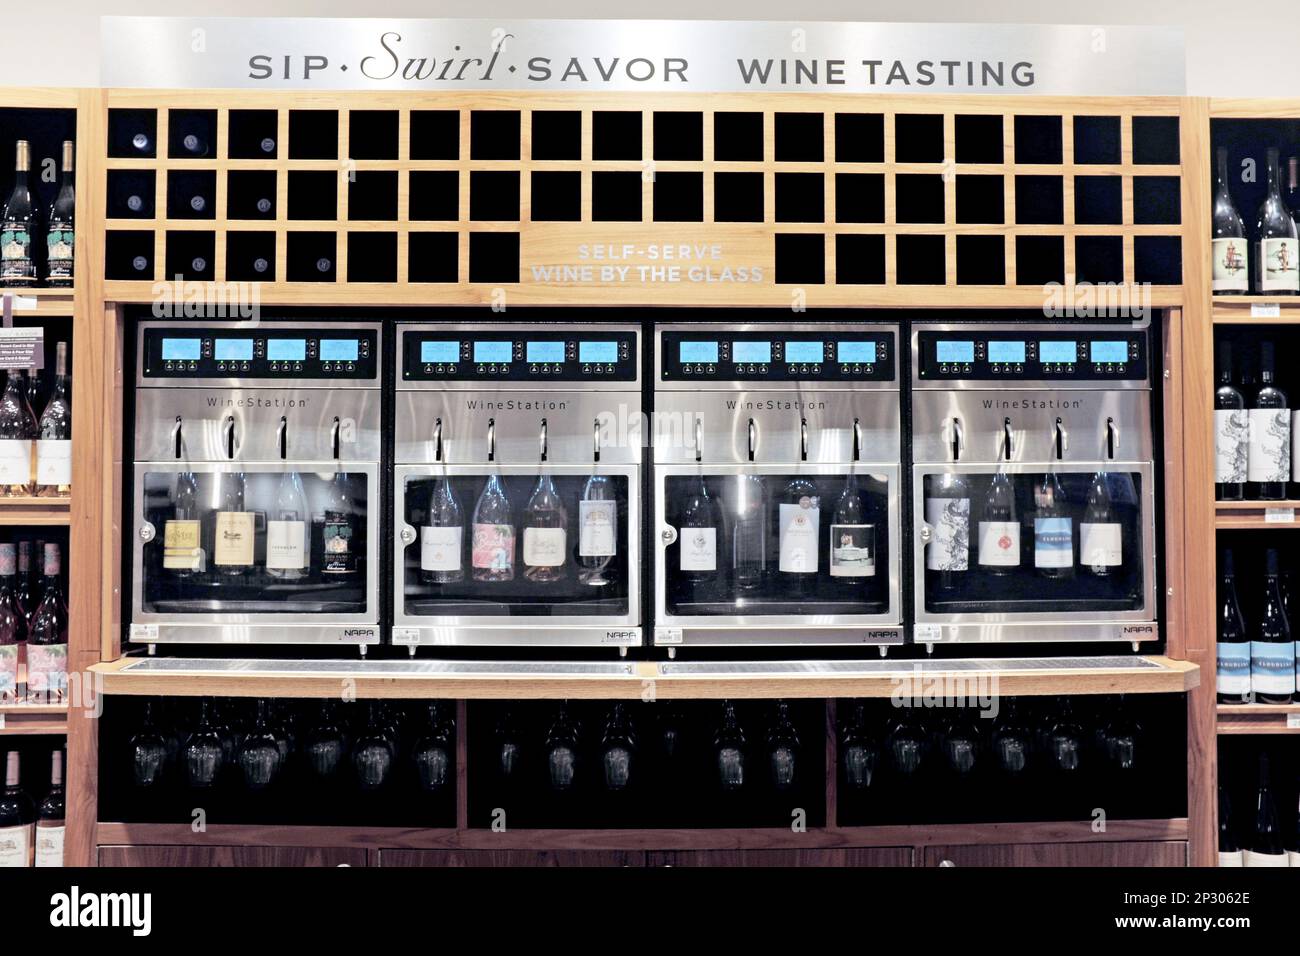 Quatre machines réfrigérées à vin au verre offrant 16 vins à déguster ou à acheter au verre dans une épicerie haut de gamme de Cleveland, Ohio, États-Unis. Banque D'Images